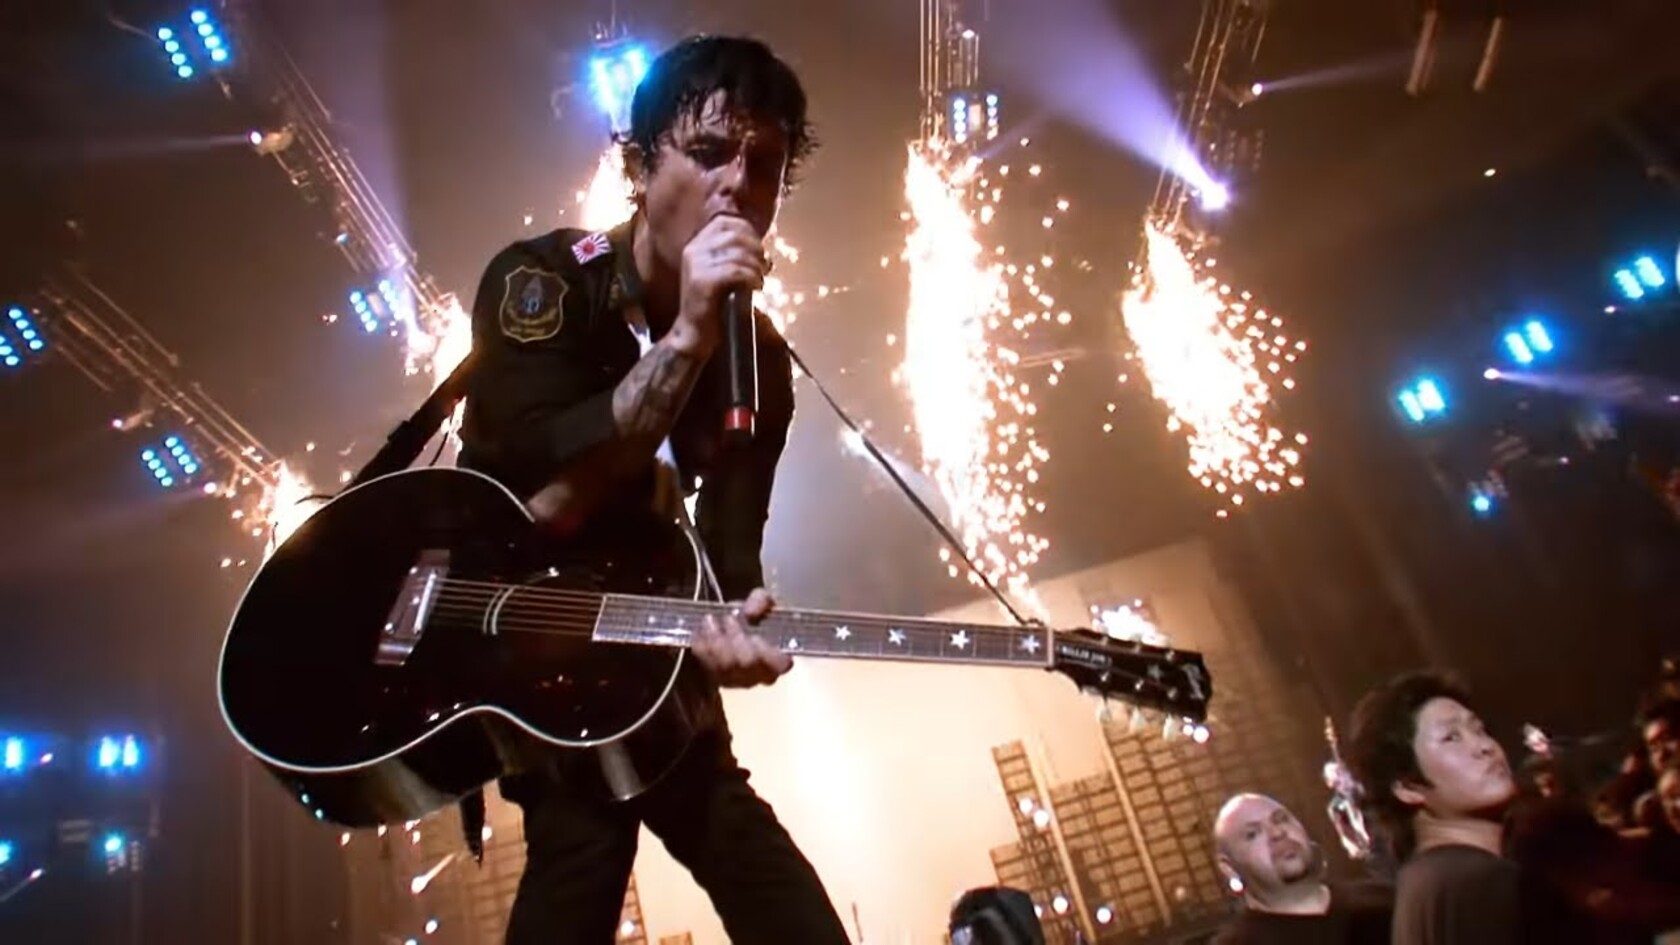 🎸 Відео дня: гурт Green Day презентував нову пісню Look Ma, No Brains на концерті у Лас-Вегасі